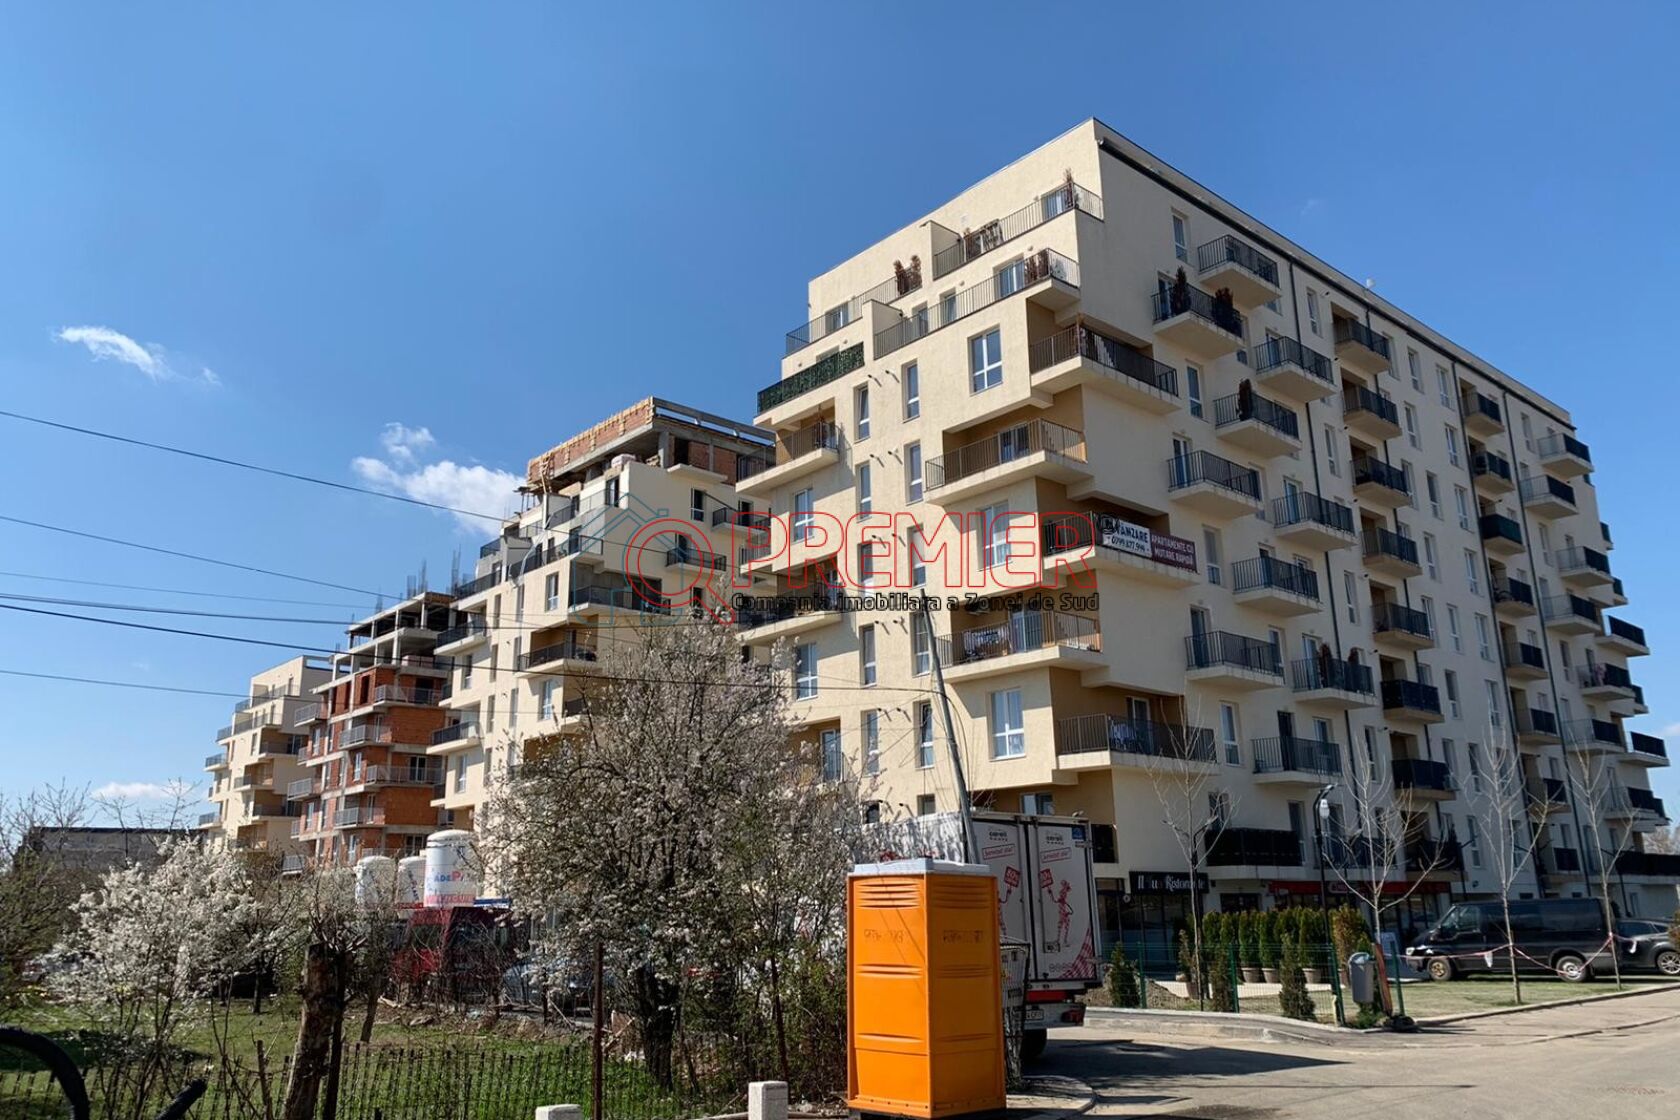 New Apartamente De Vanzare Bucuresti Sector 4 for Small Space